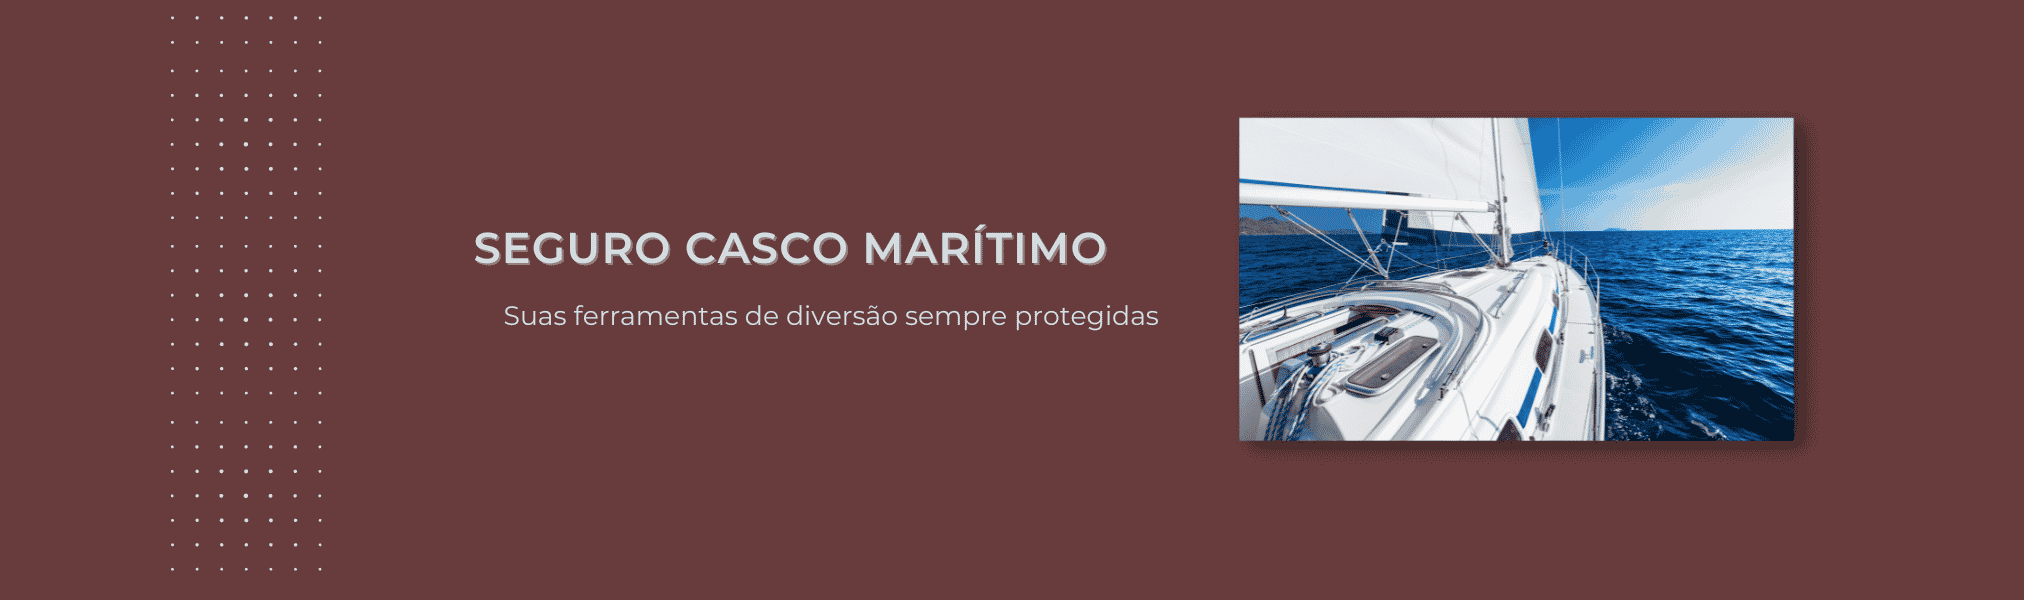 Banner Seguro Casco Maritimo